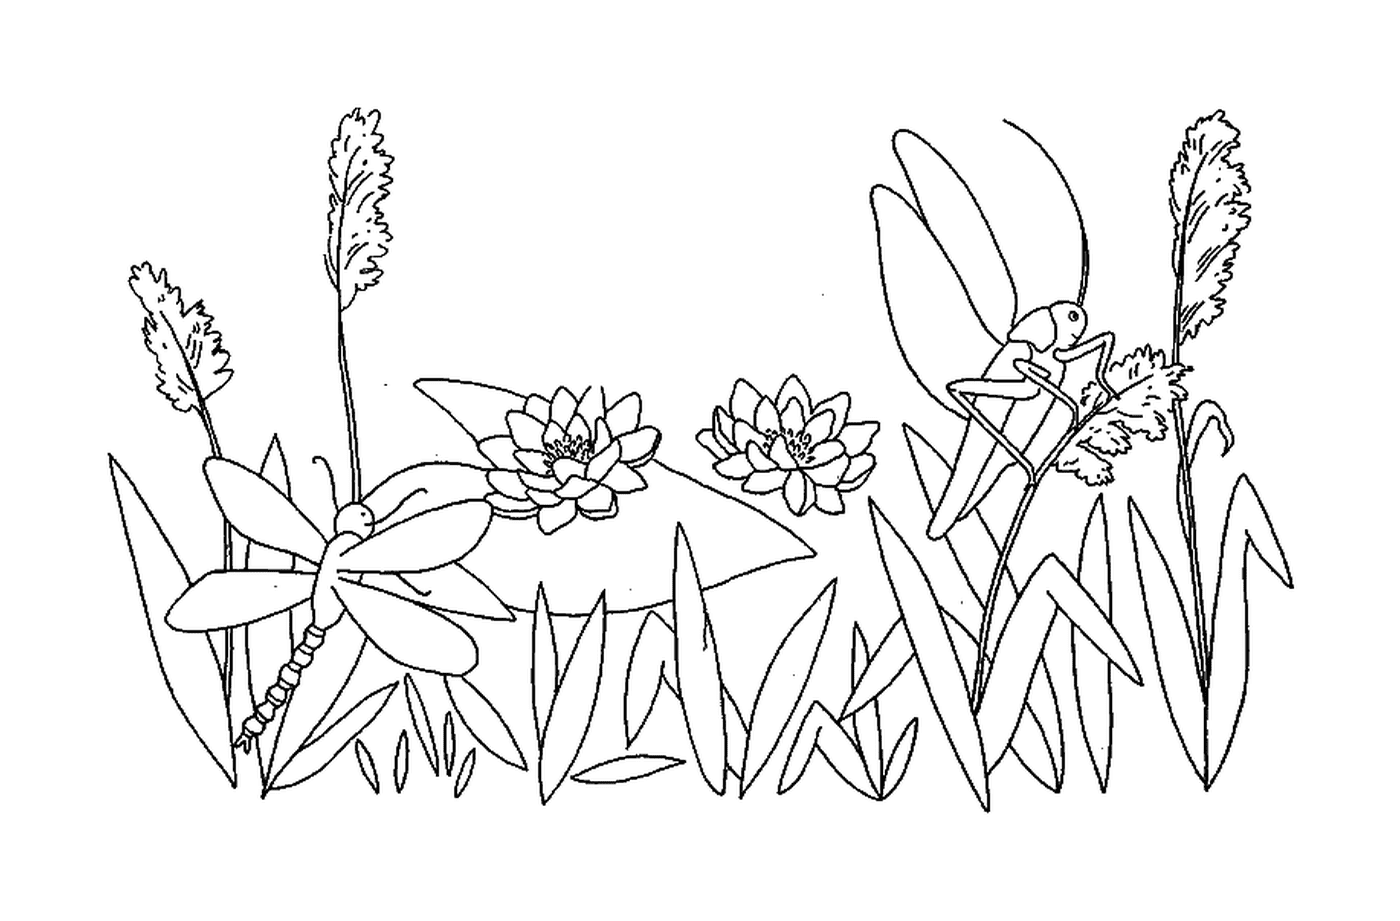  Una libélula y un saltamontes en un jardín de flores 